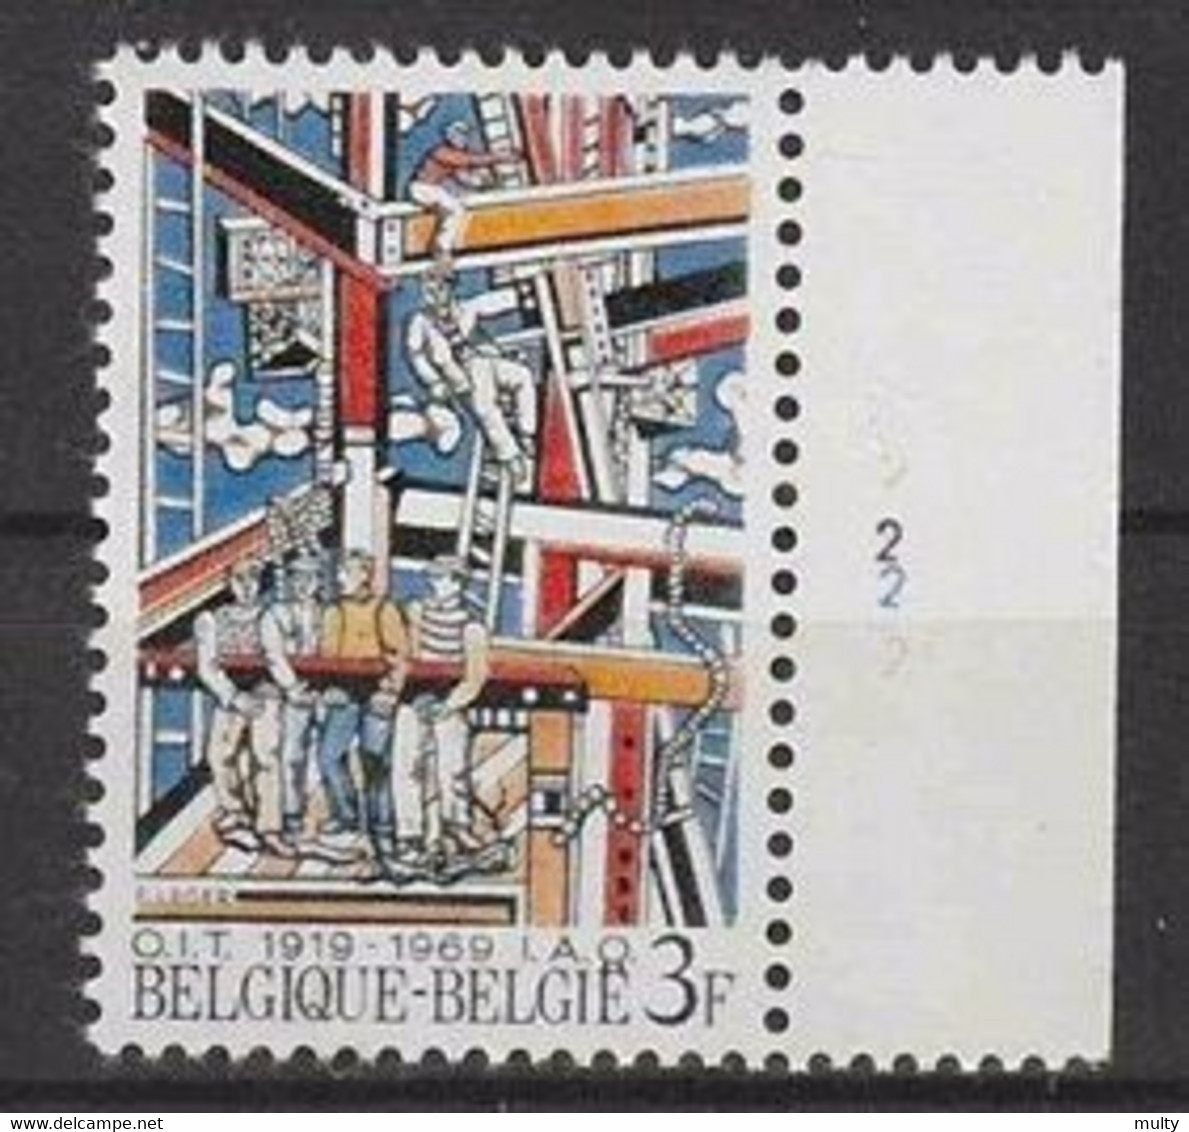 Belgie OCB 1497 ** MNH Met Plaatnummer 2. - 1961-1970